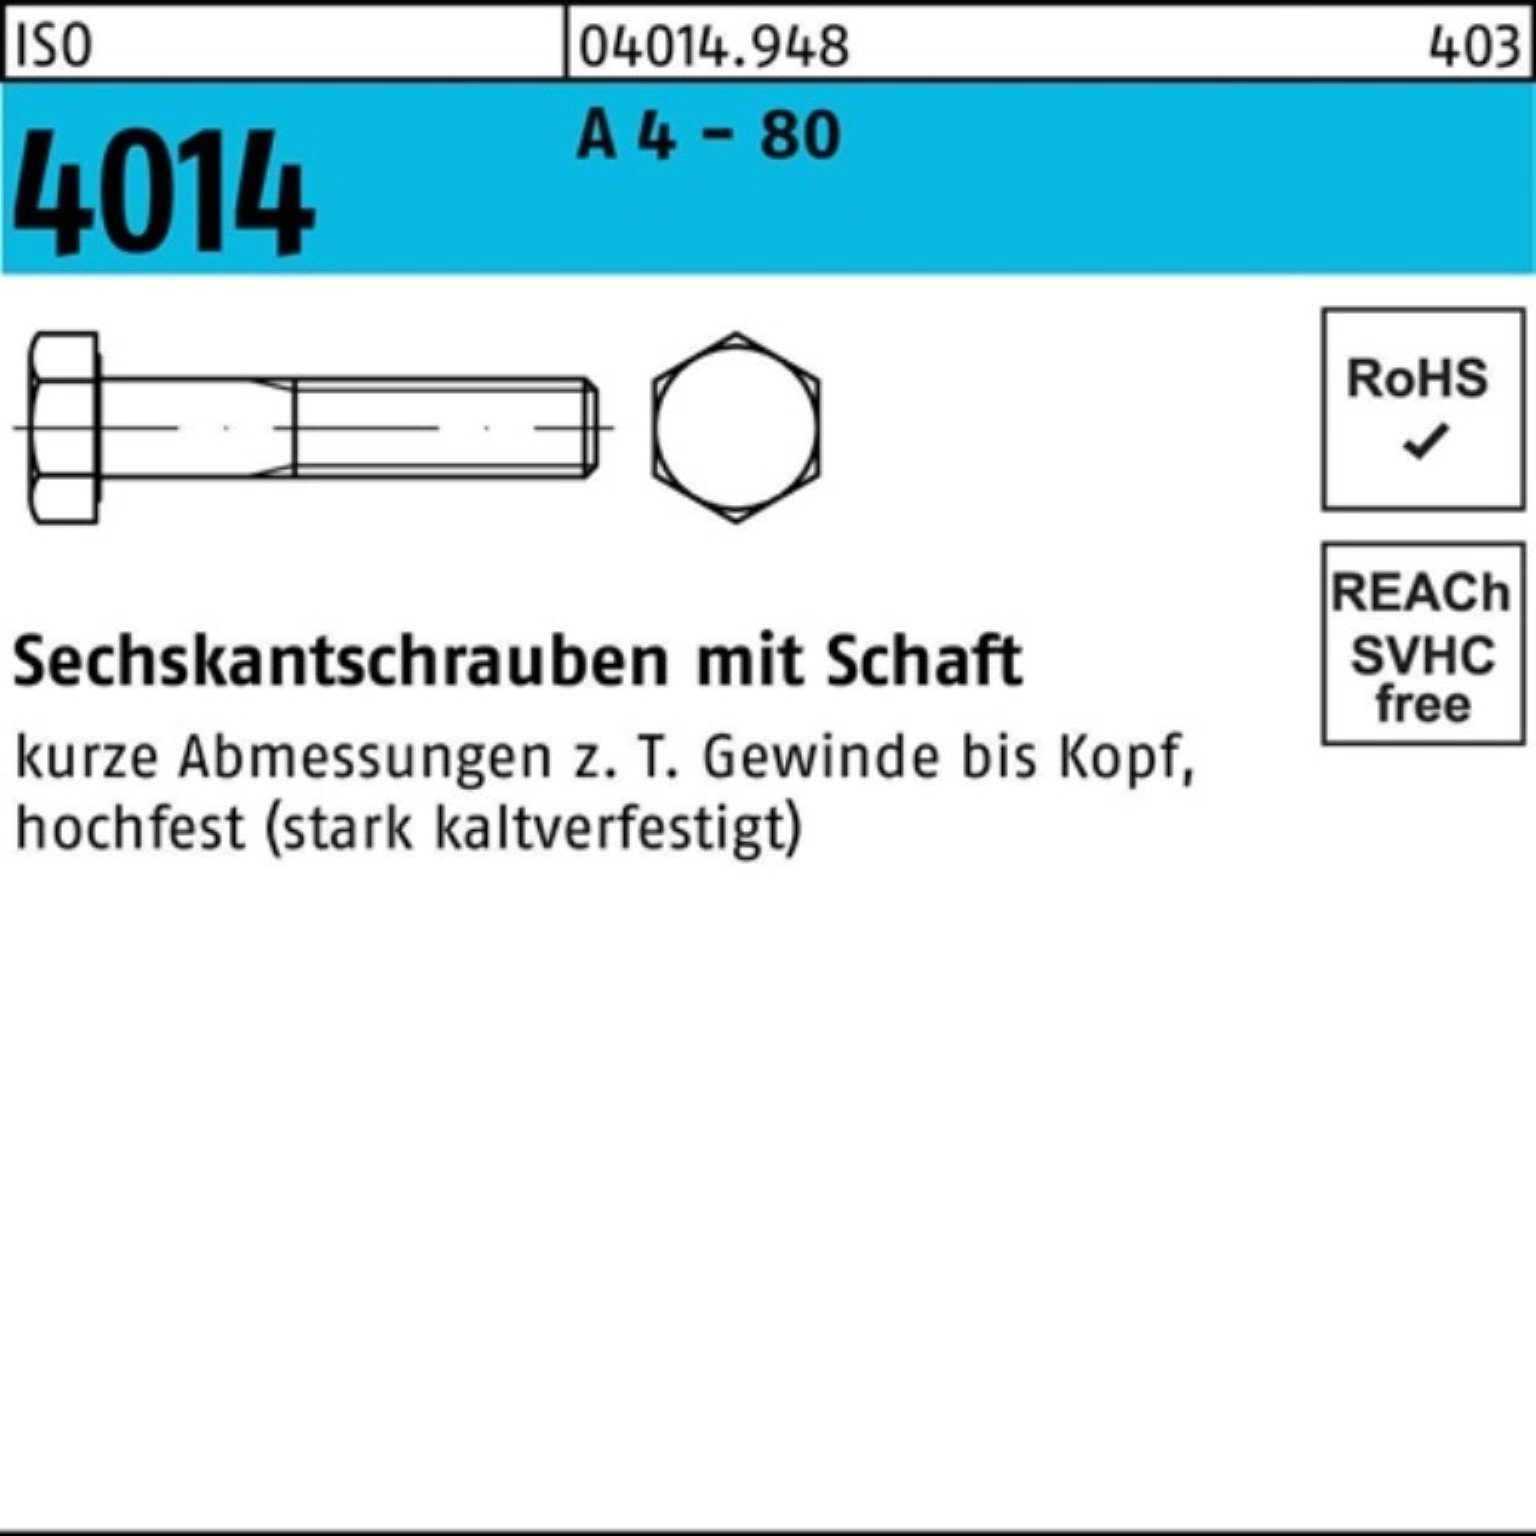 4 M12x Stüc Sechskantschraube Sechskantschraube 90 80 4014 ISO - Bufab Pack Schaft 100er 25 A